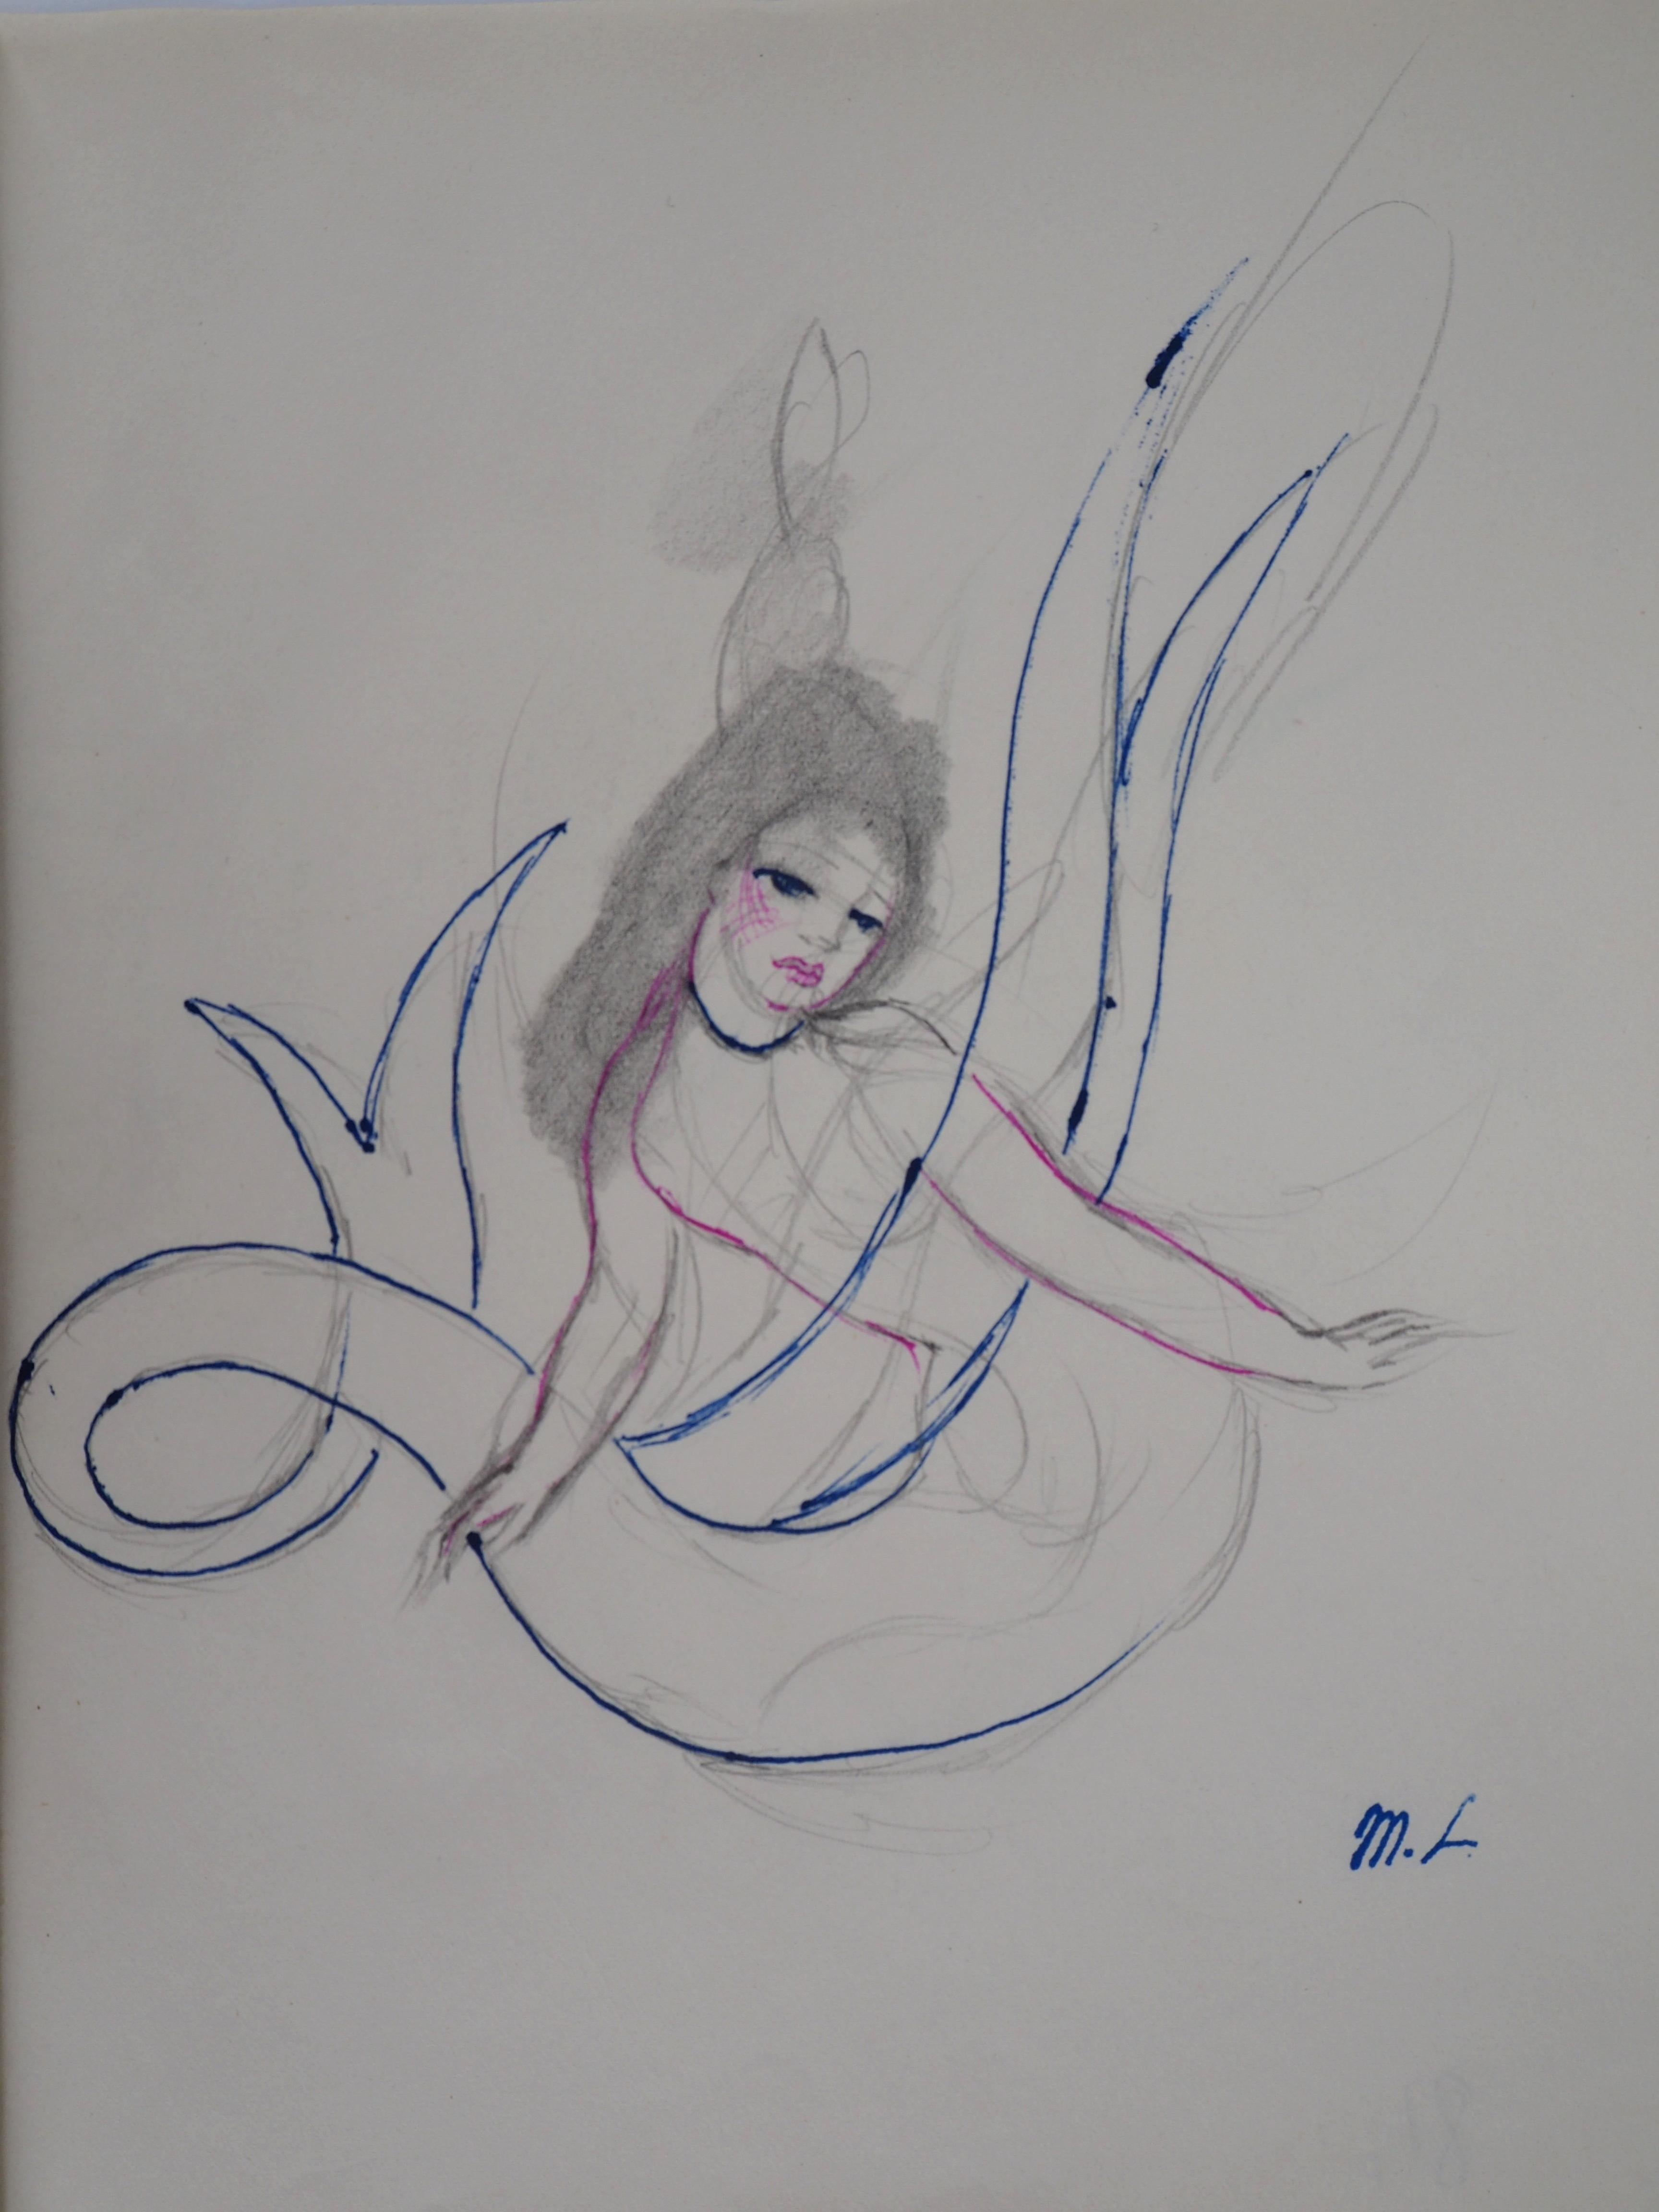 Marie LAURENCIN
Meerjungfrau, 1953

Original Tusche- und Bleistiftzeichnung 
Signiert mit Künstlerstempel
Auf Papier 24,5 x 19,5 cm (ca. 9,6 x 7,6 Zoll)

Sehr guter Zustand, Spuren der Manipulation auf dem Papier